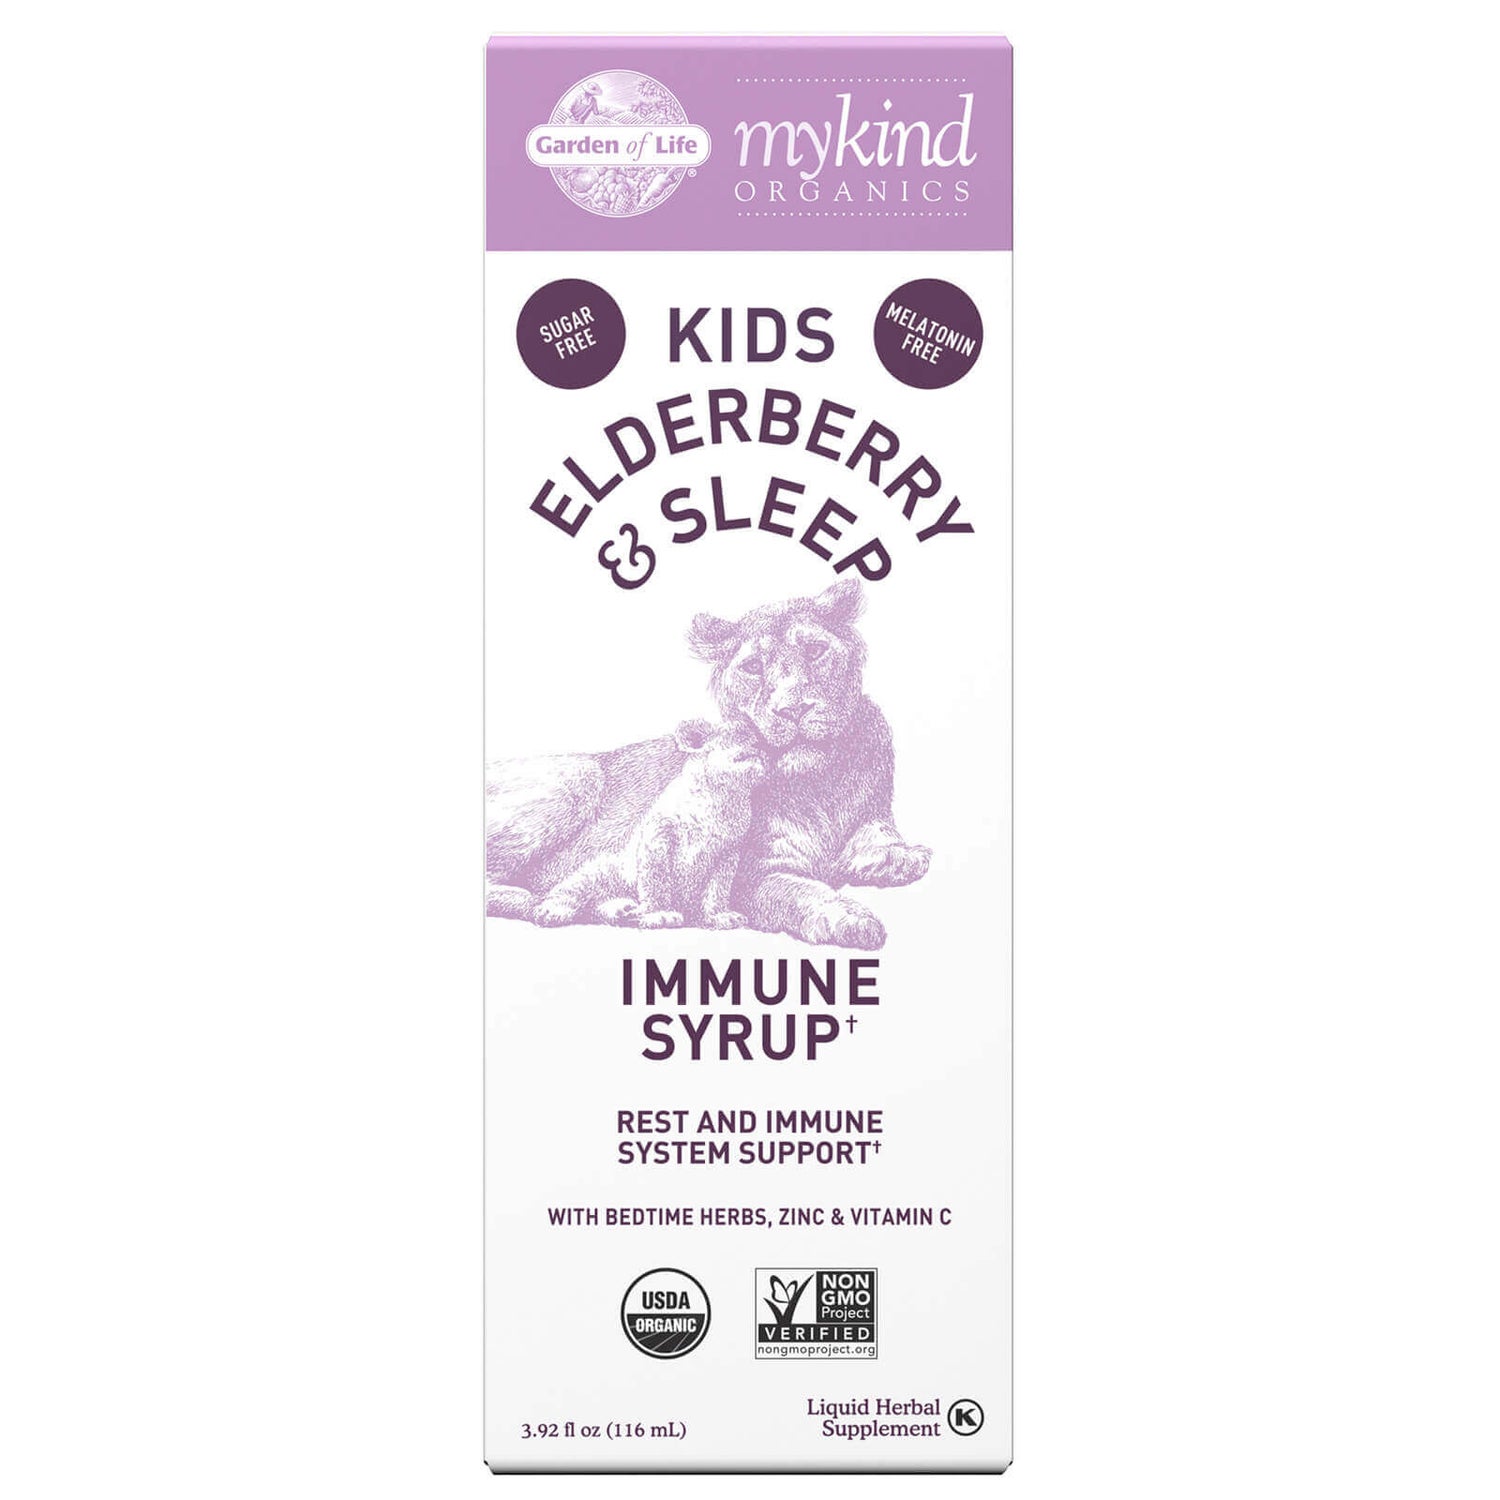 Organics Kinderen Vlierbessen & Slaap Immuunsiroop - 116 ml